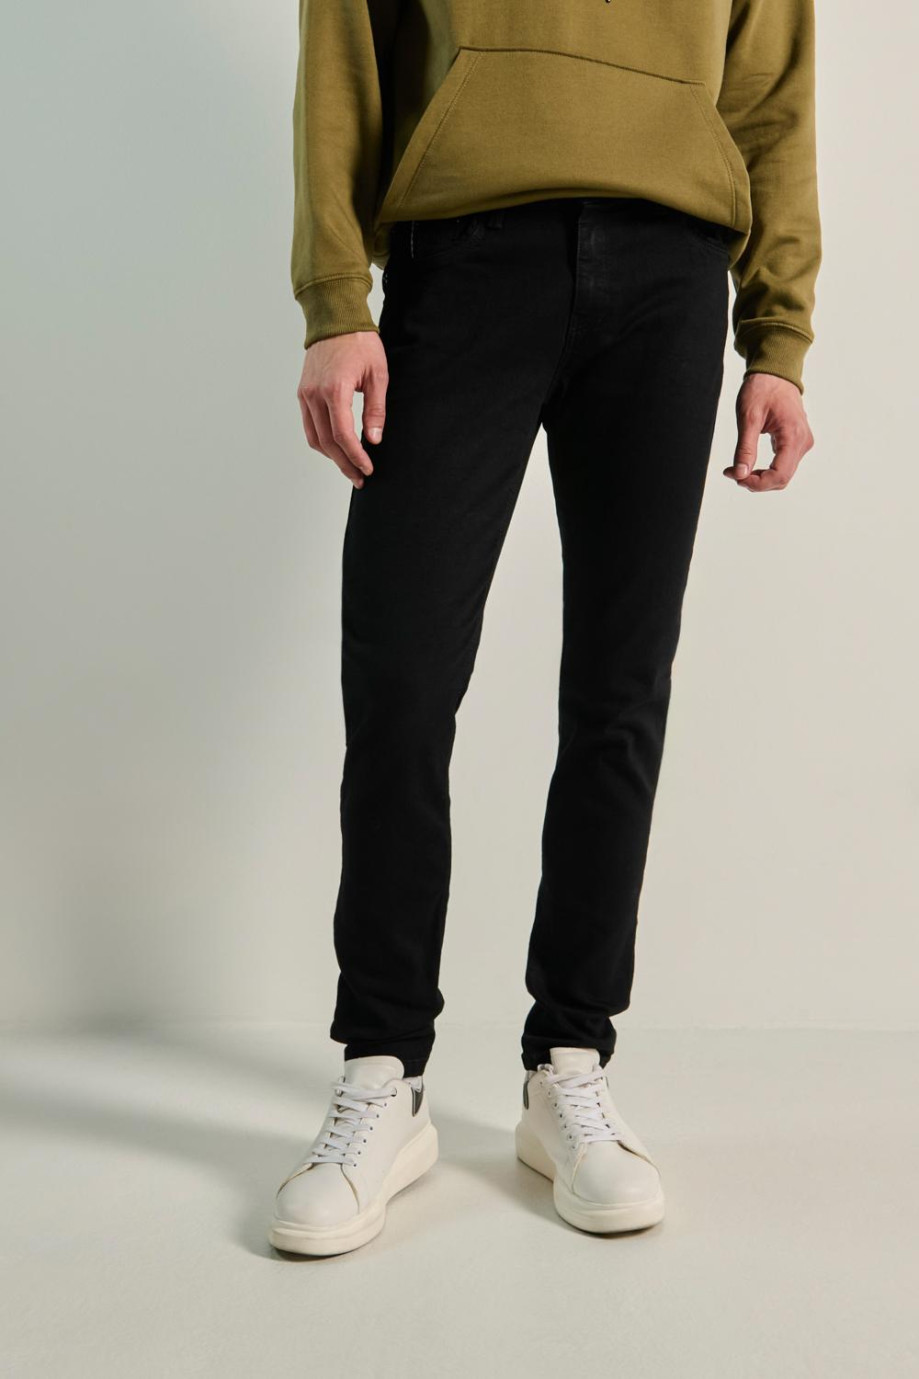 Jean skinny negro con tiro bajo, bolsillos y bota ajustada